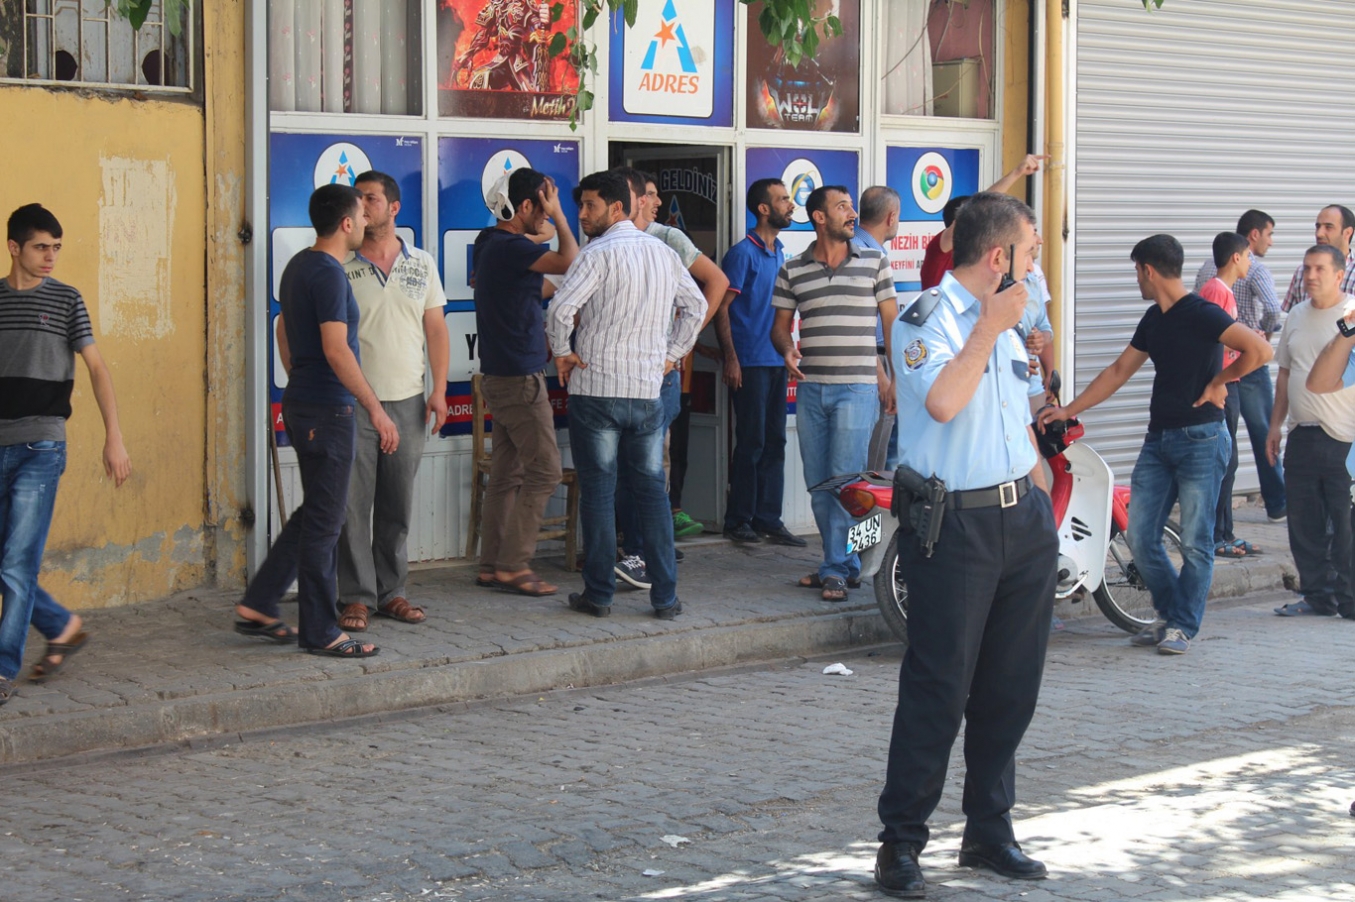 Sözlü tartışma silahlı mahalle kavgasına dönüştü: 4 yaralı